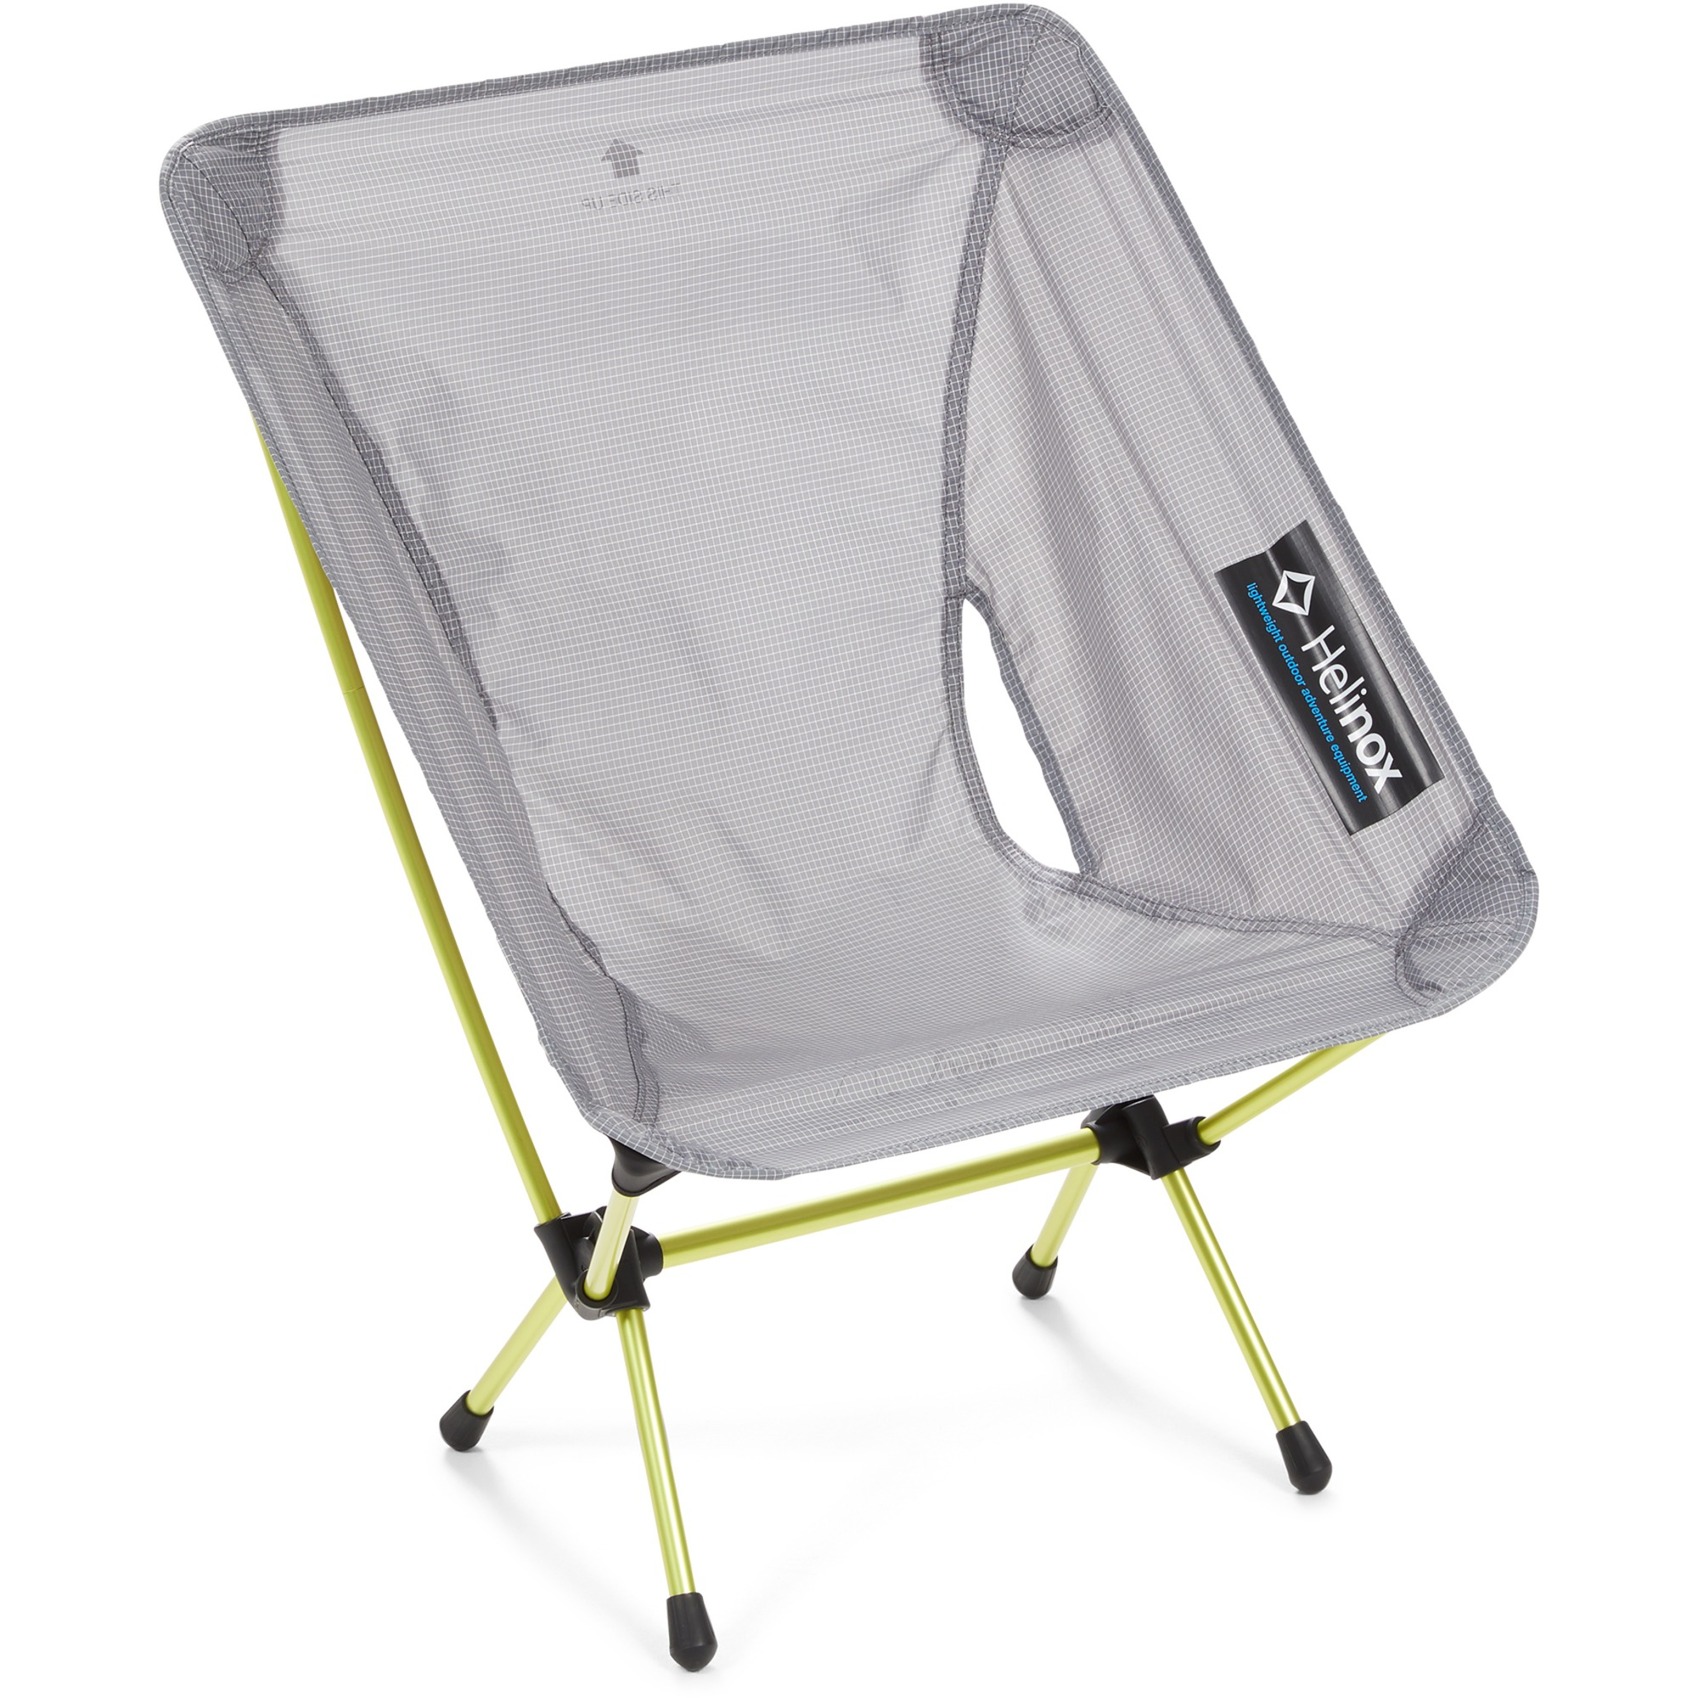 Camping-Stuhl Chair Zero L 10556 von Helinox